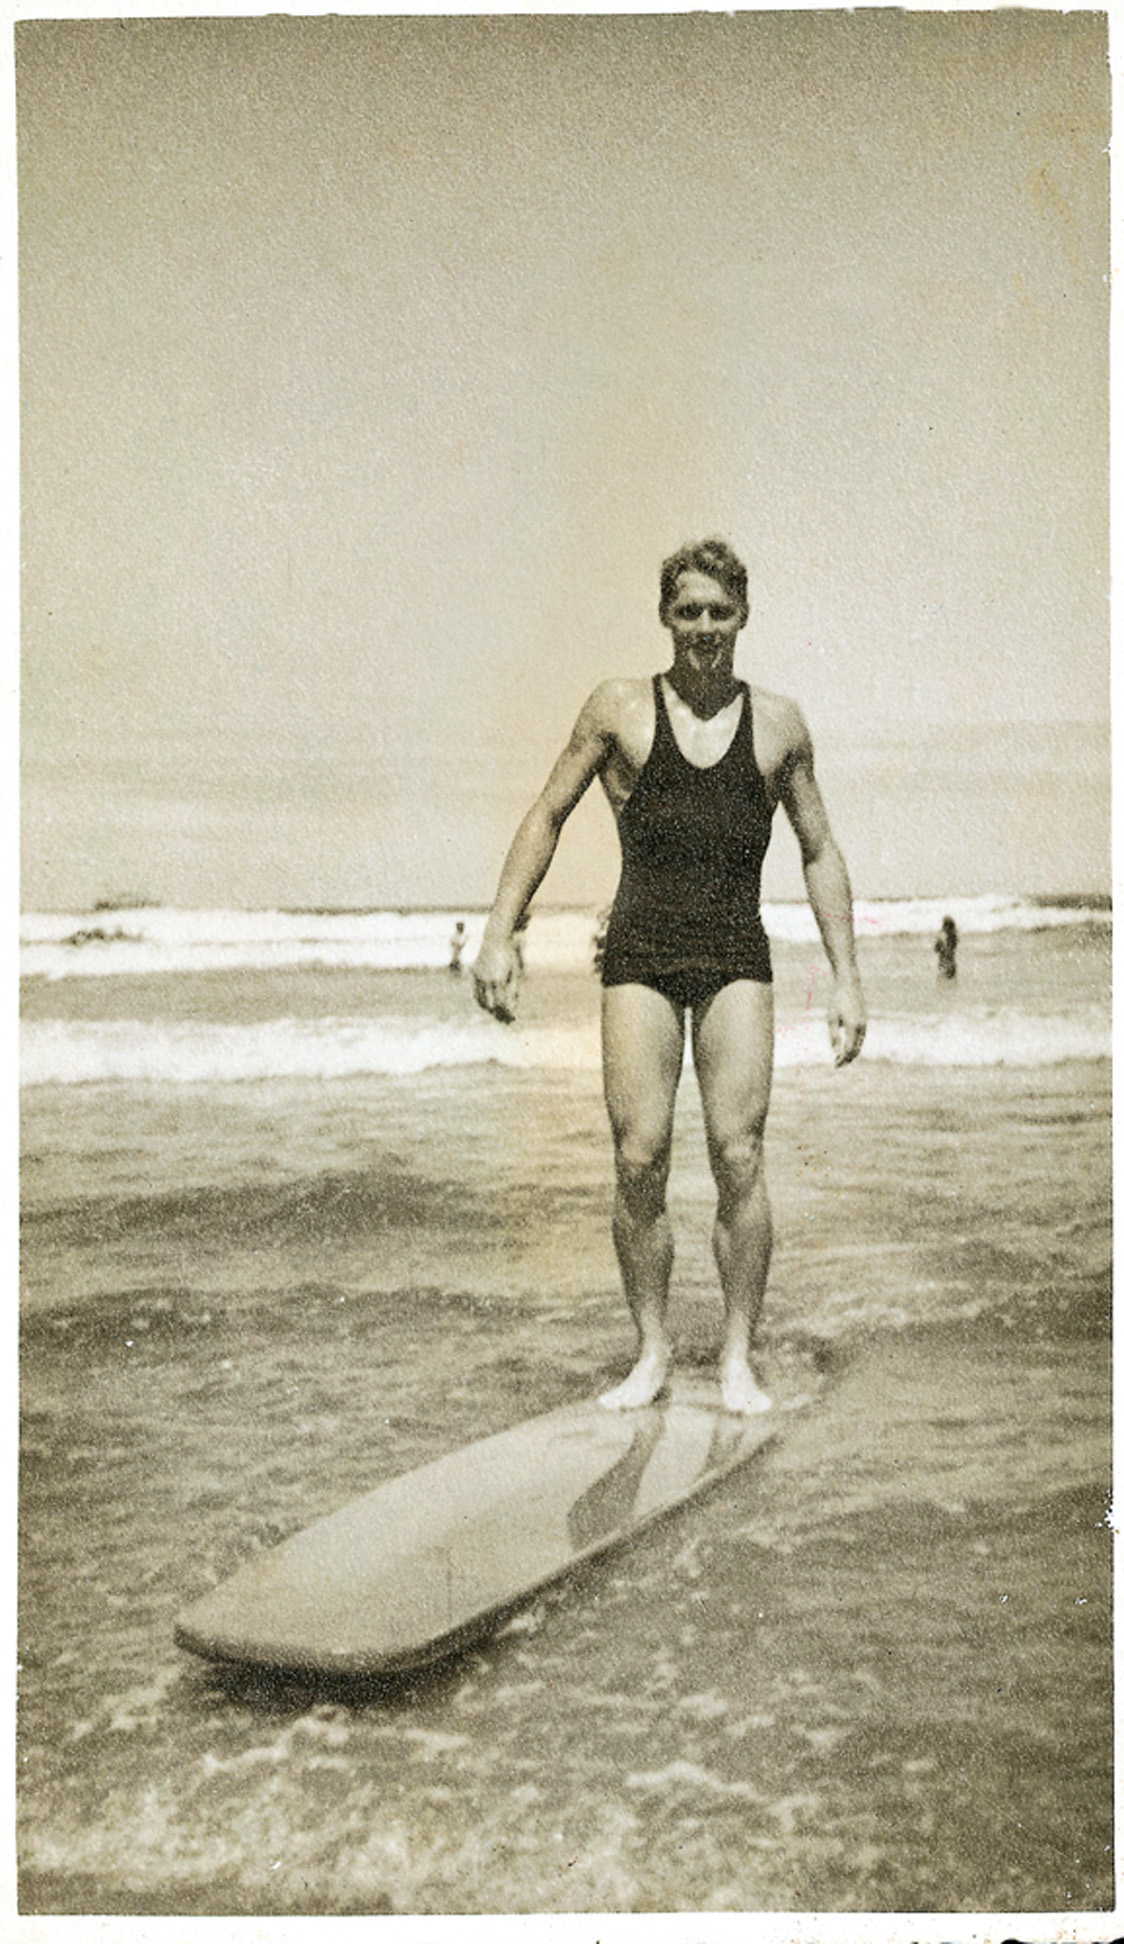 Thomas Rittscher (1917/2012): nacionalidade: norte-americano naturalizado brasileiro / principal feito: primeiro homem a surfar no Brasil, por volta de 1936 / Registro: entrevista na Trip 94 [2001]